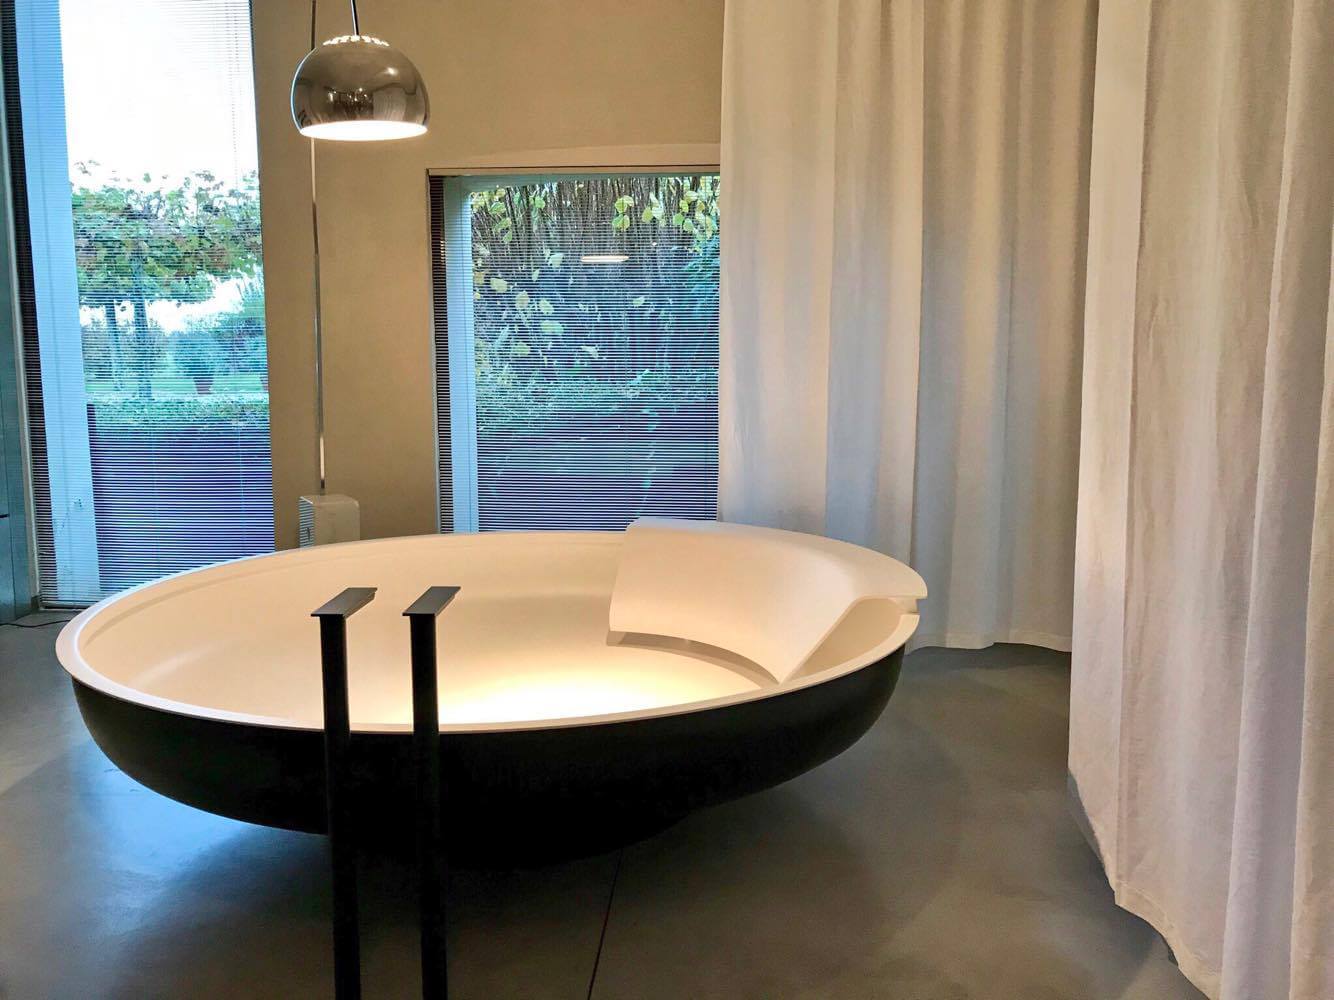 Bad in Weiß mit freistehender, runder Badewanne für zwei mit schwarzer Außenseite von Agape